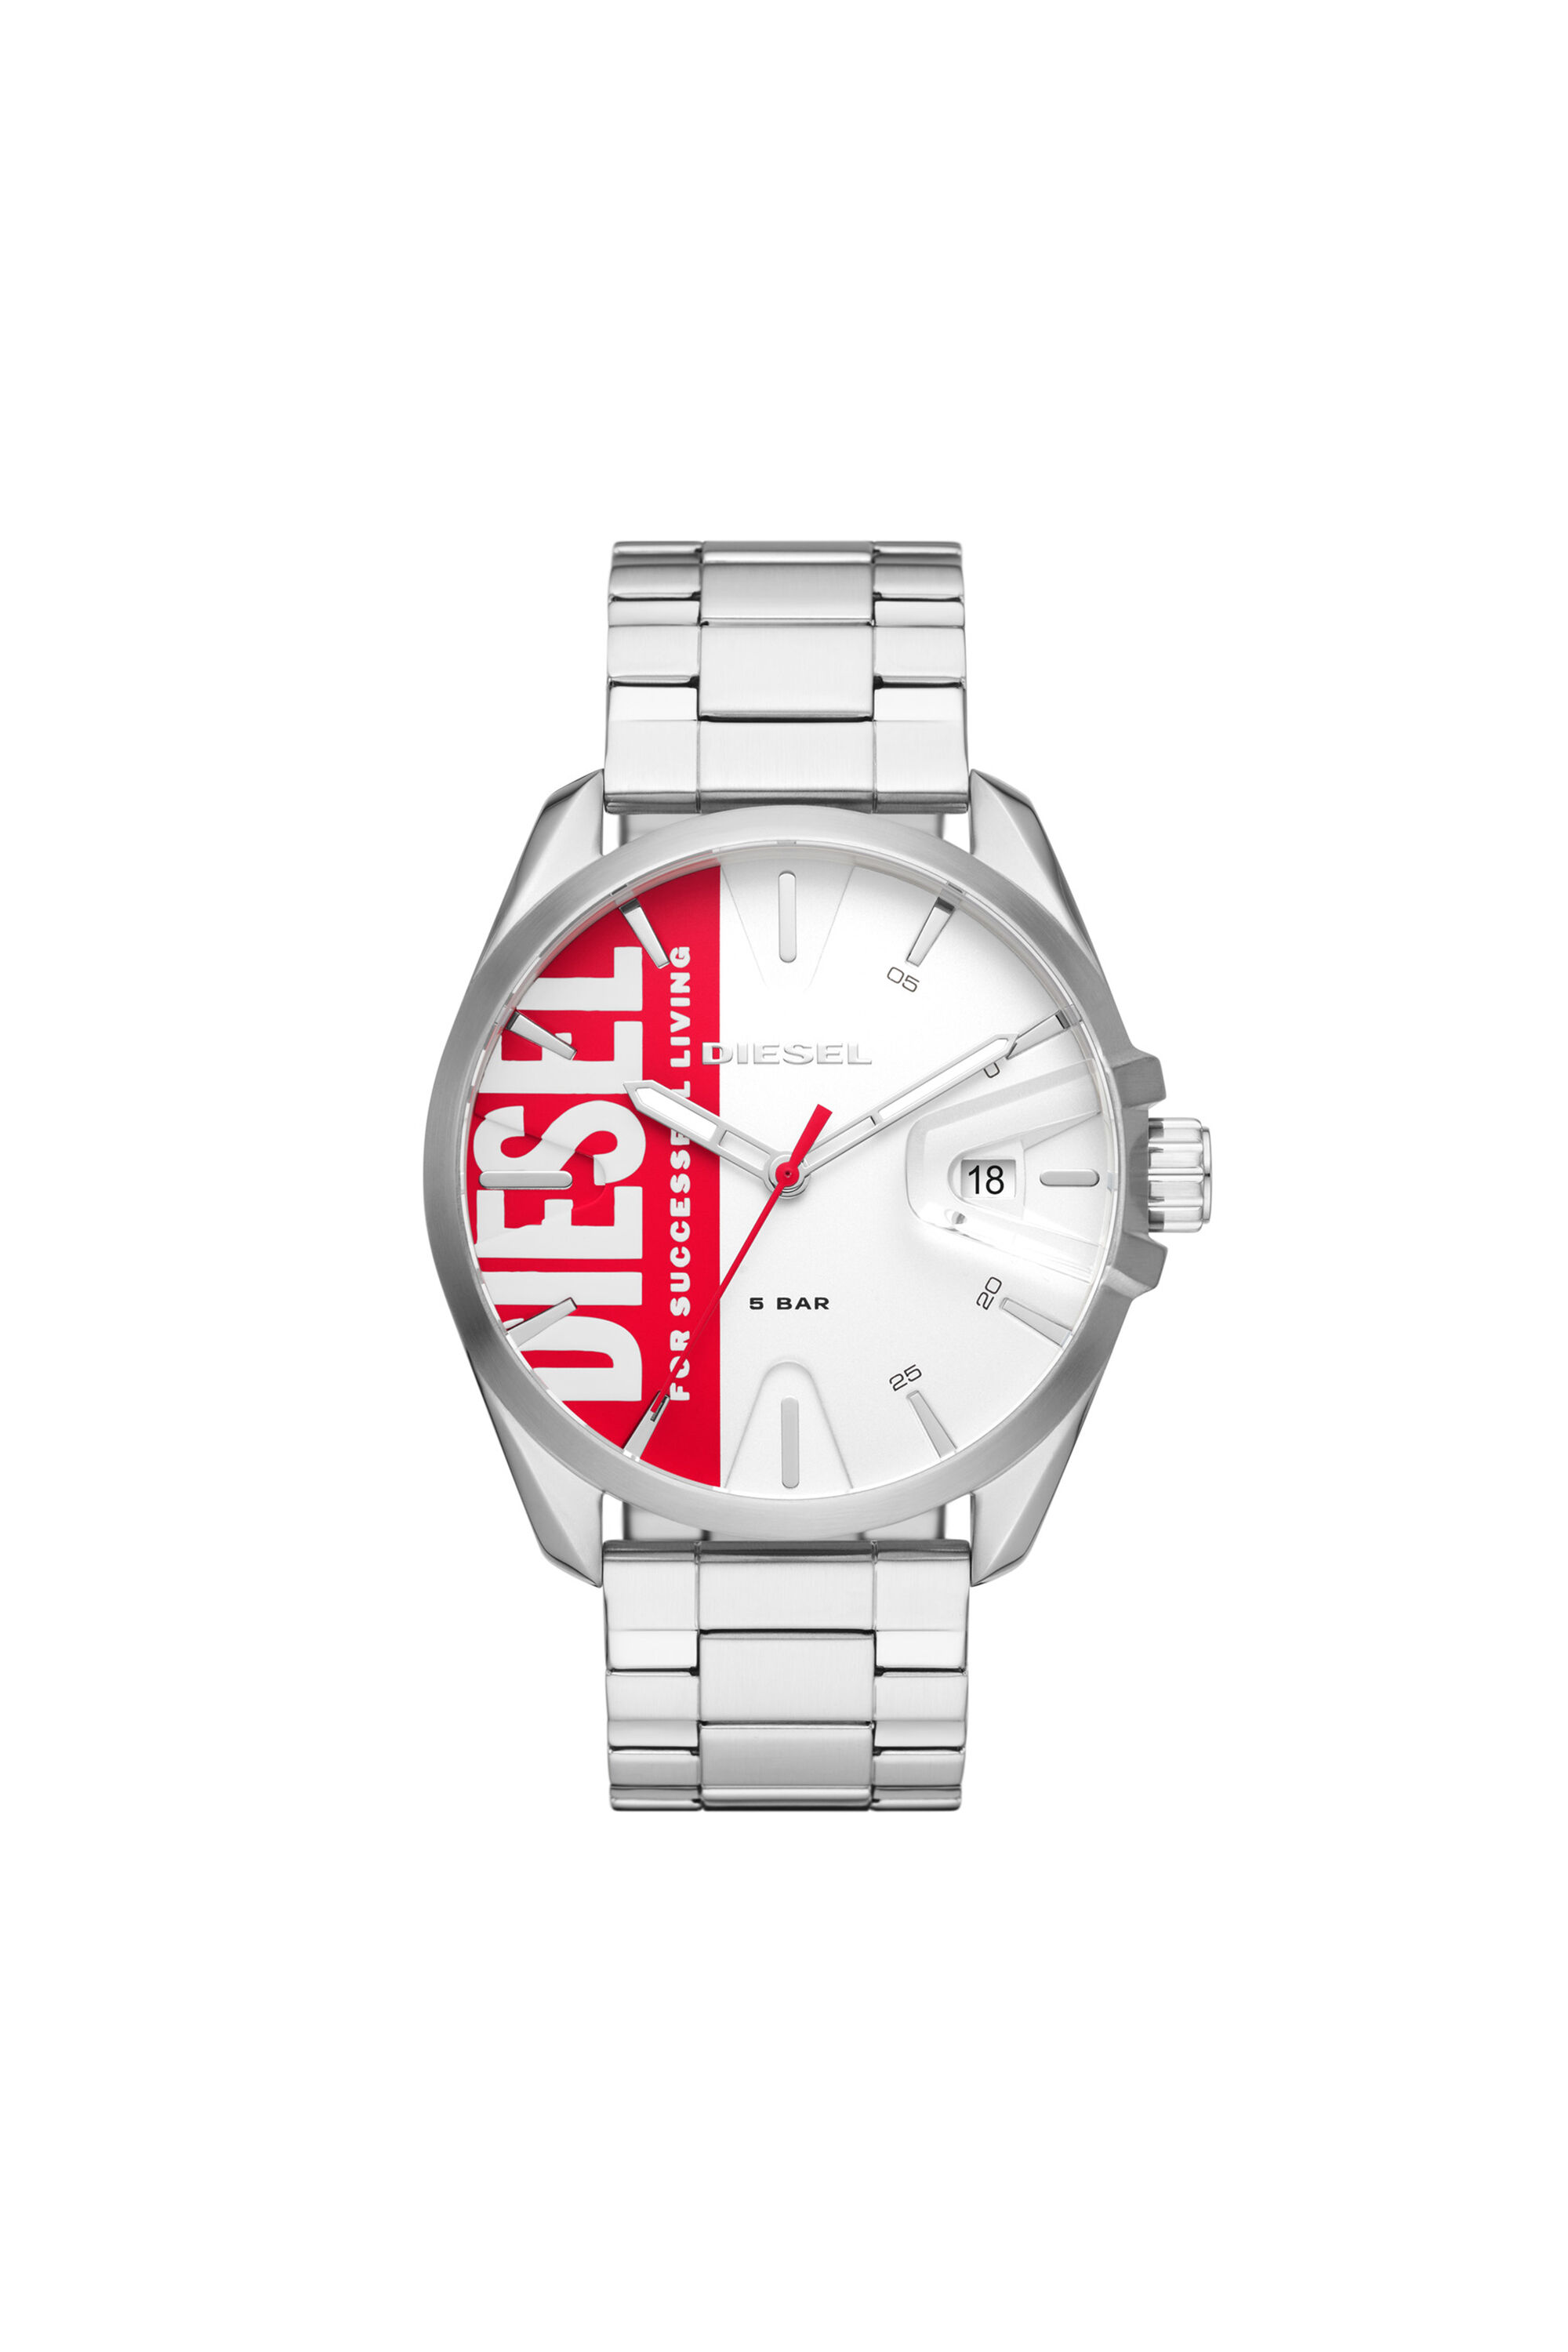 DZ1992: Women's silver-colored steel watch | Diesel MS9